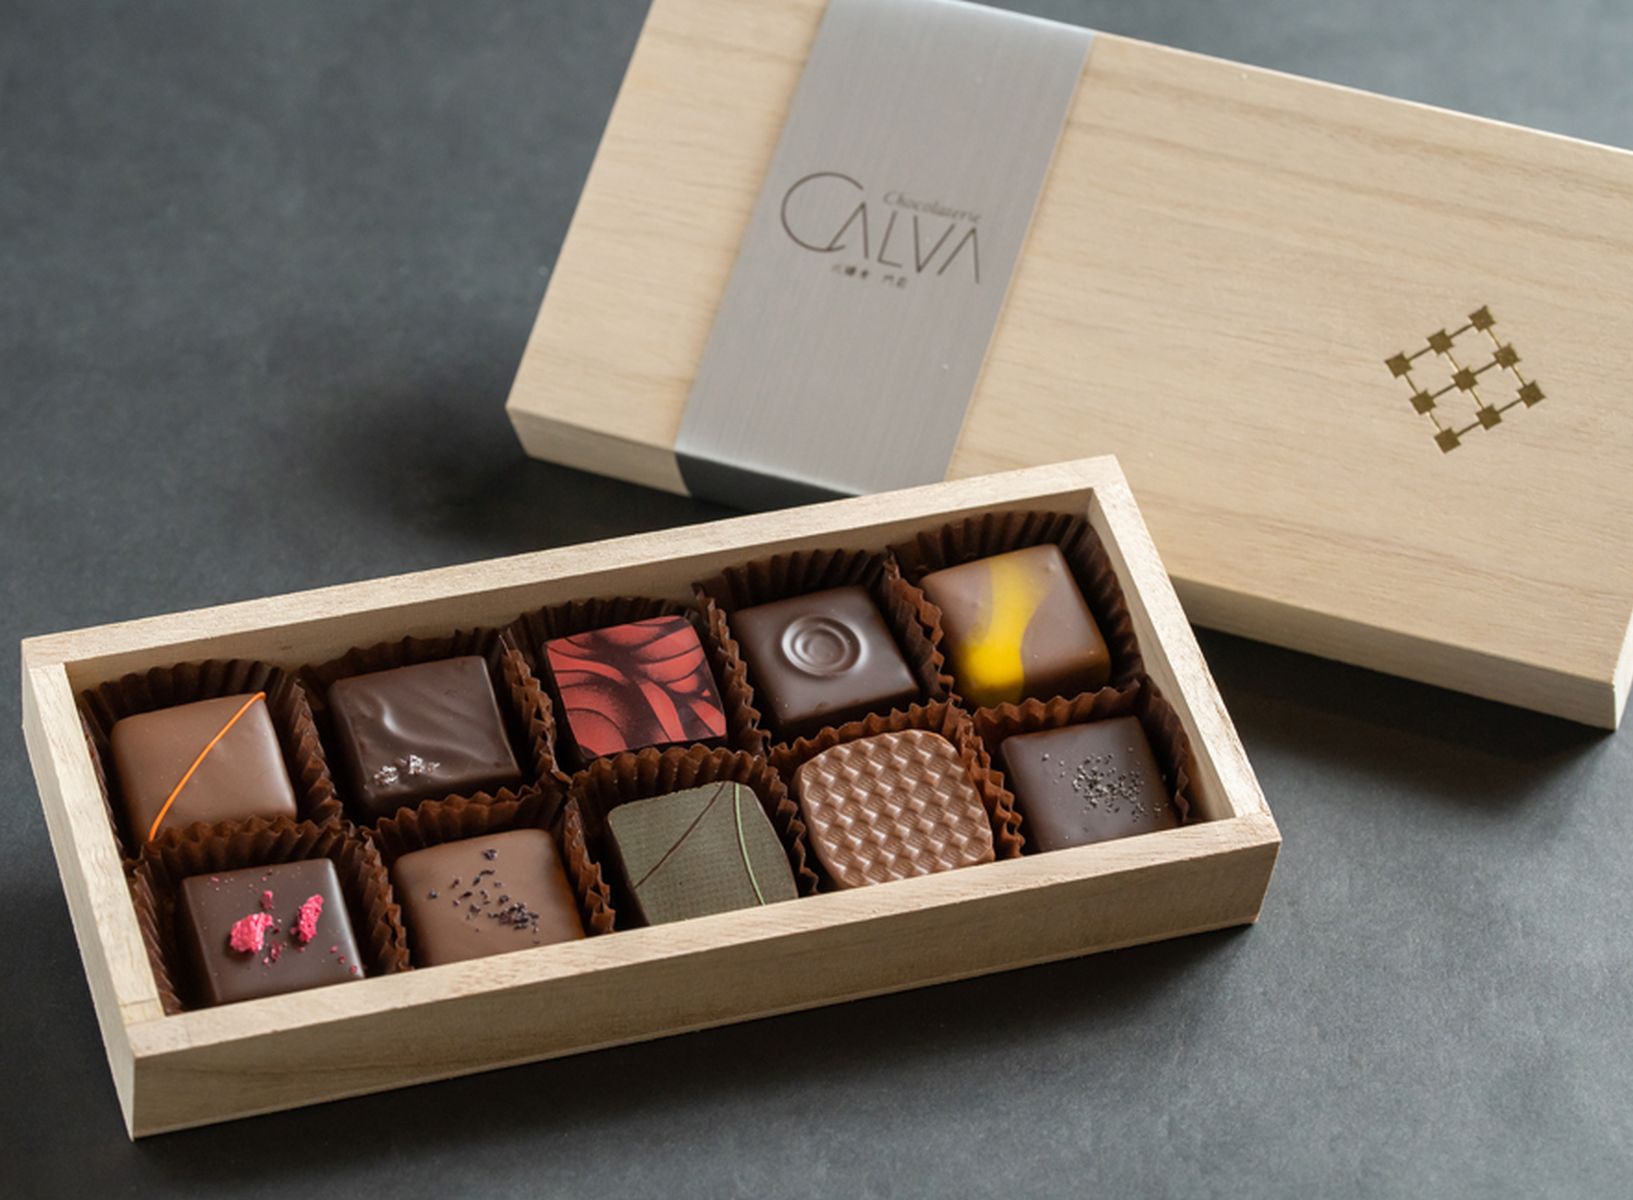 「ショコラトリー カルヴァ」の木箱入りショコラセット各種はオンラインショップからも購入可能